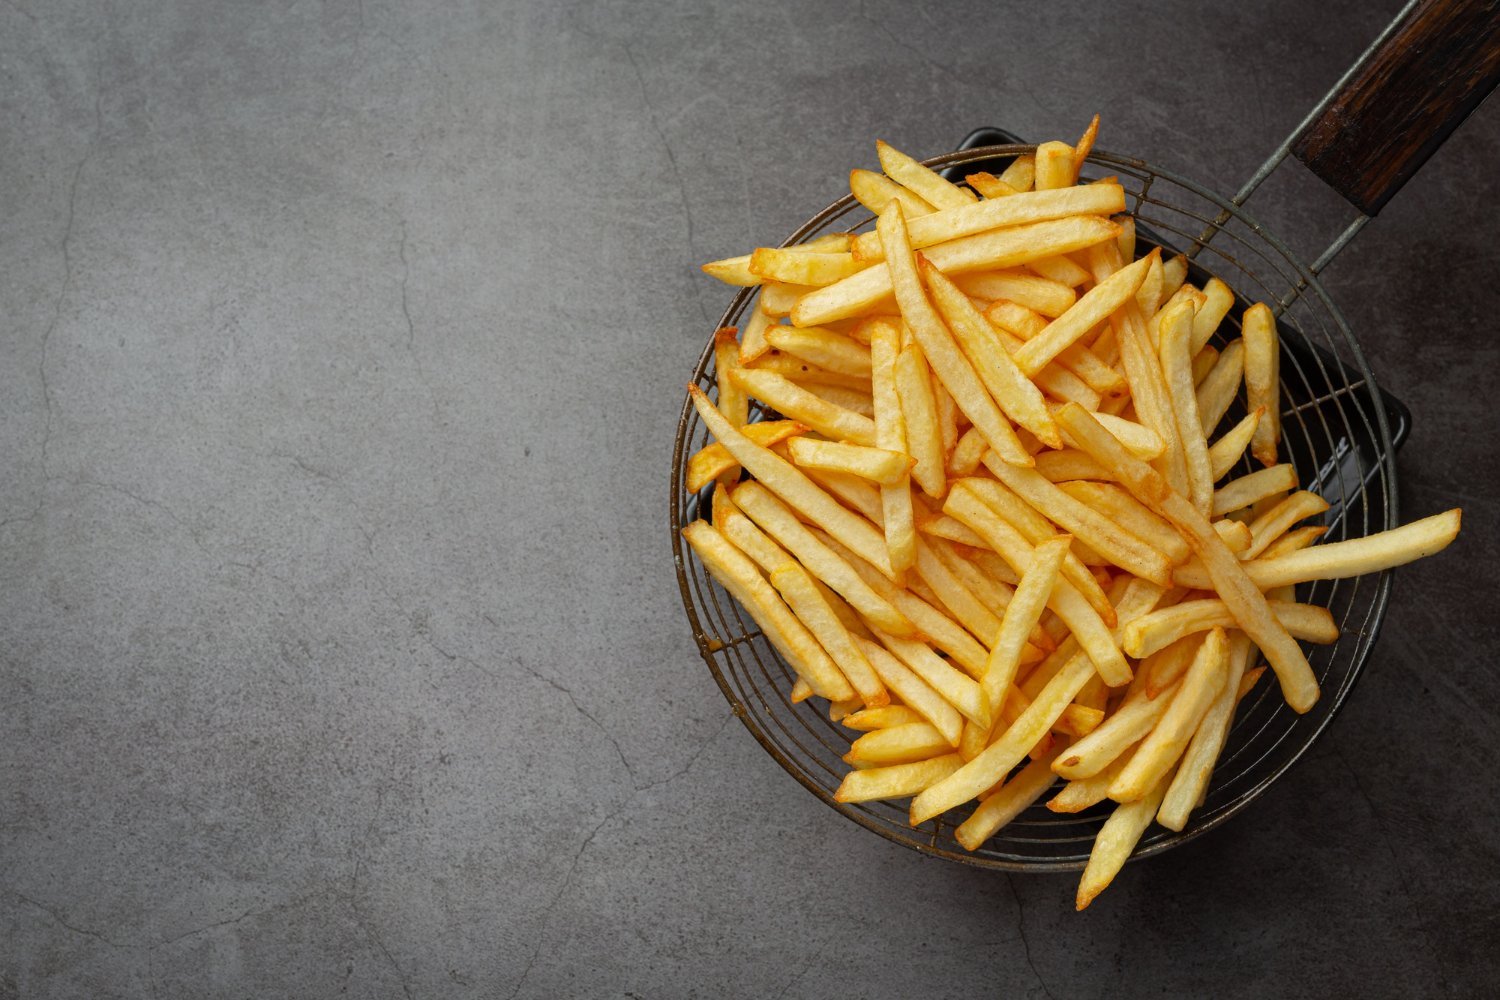 Sejarah French Fries: Ternyata Bukan dari Prancis